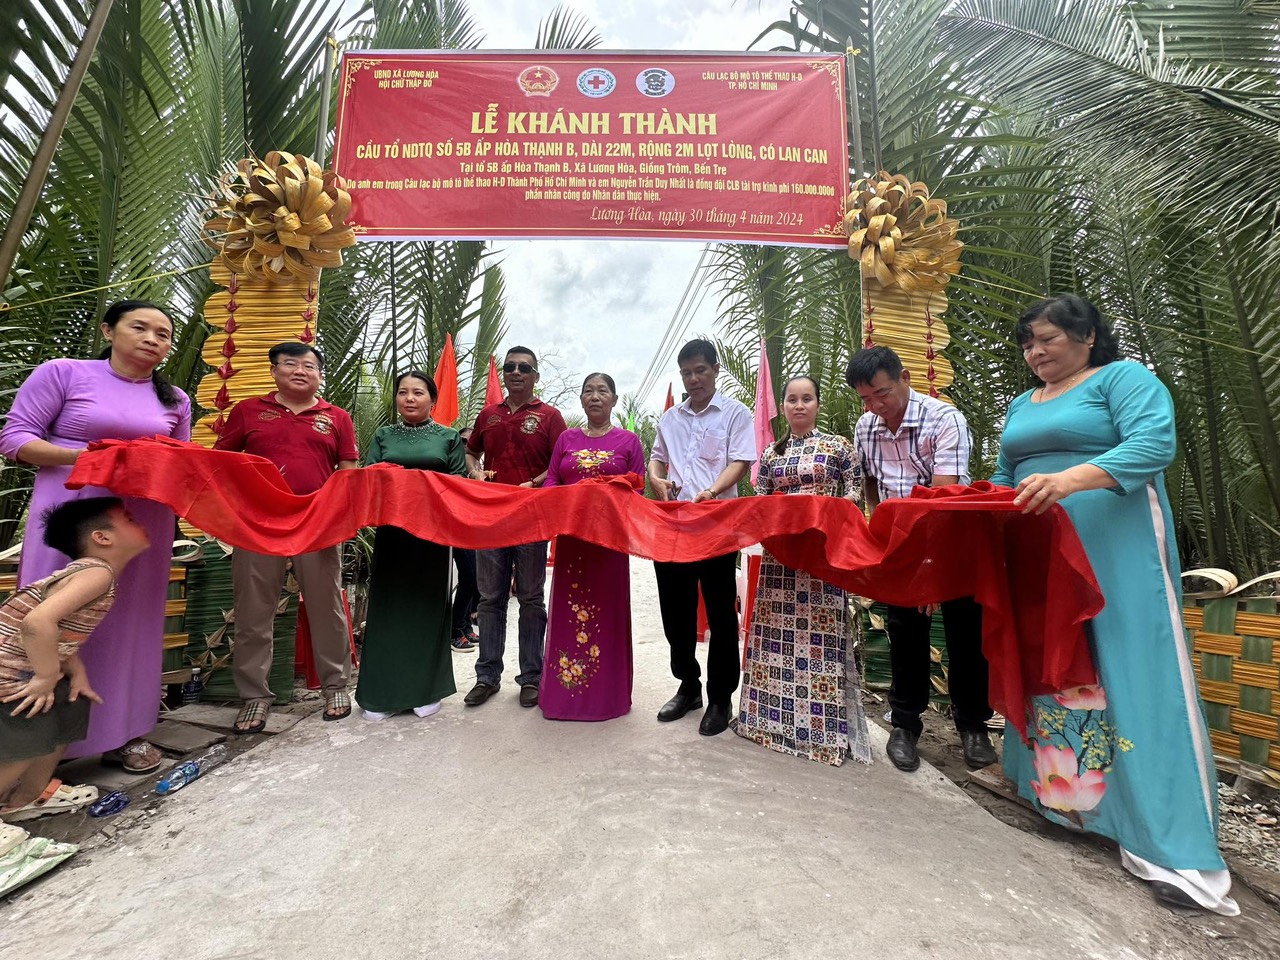             Nguyễn Trần Duy Nhất bán găng đấu để góp sức xây cầu giúp người dân Bến Tre    